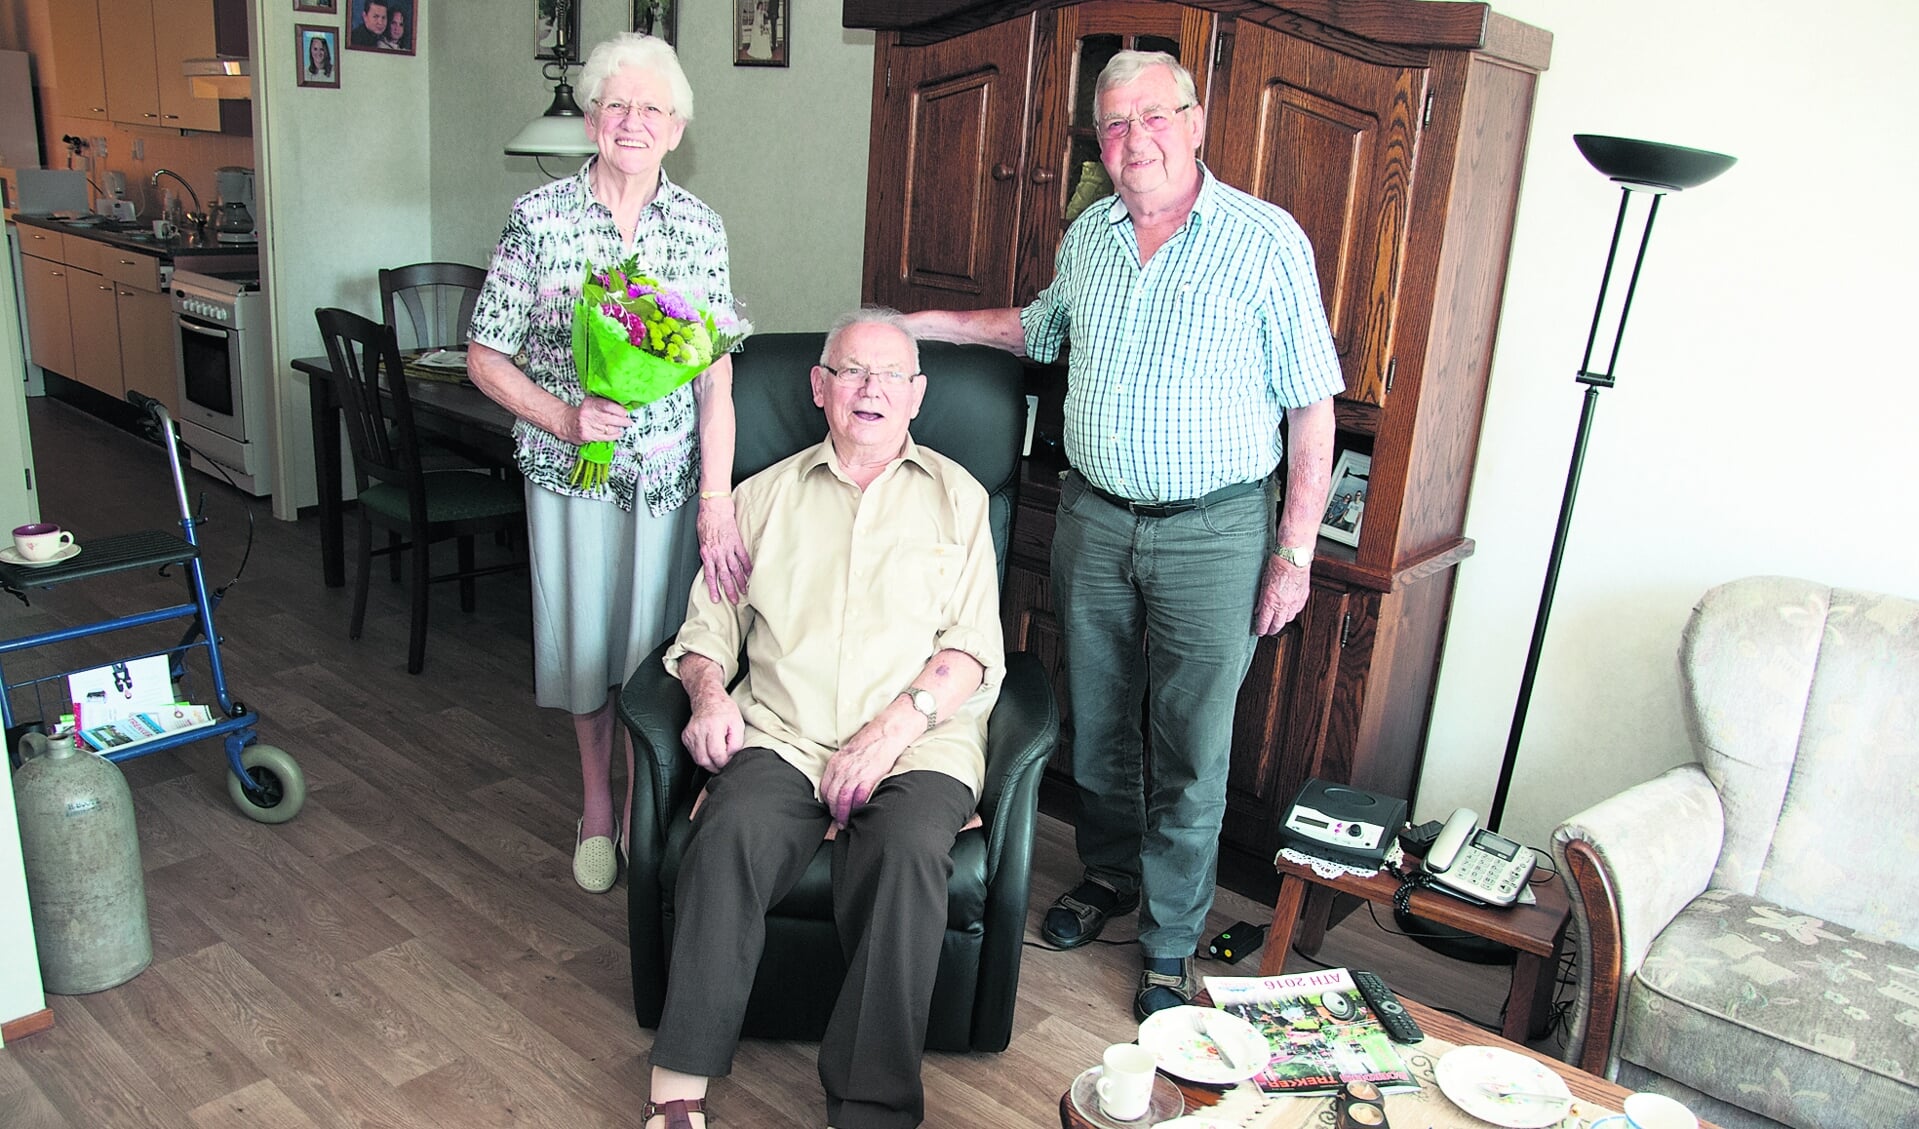 De 89-jarige Sent Mol kreeg dinsdagmiddag uit handen van Jan Ligtendag van de jubilariscommissie van vakbond CNV een speldje voor zijn zeventigjarig lidmaatschap.